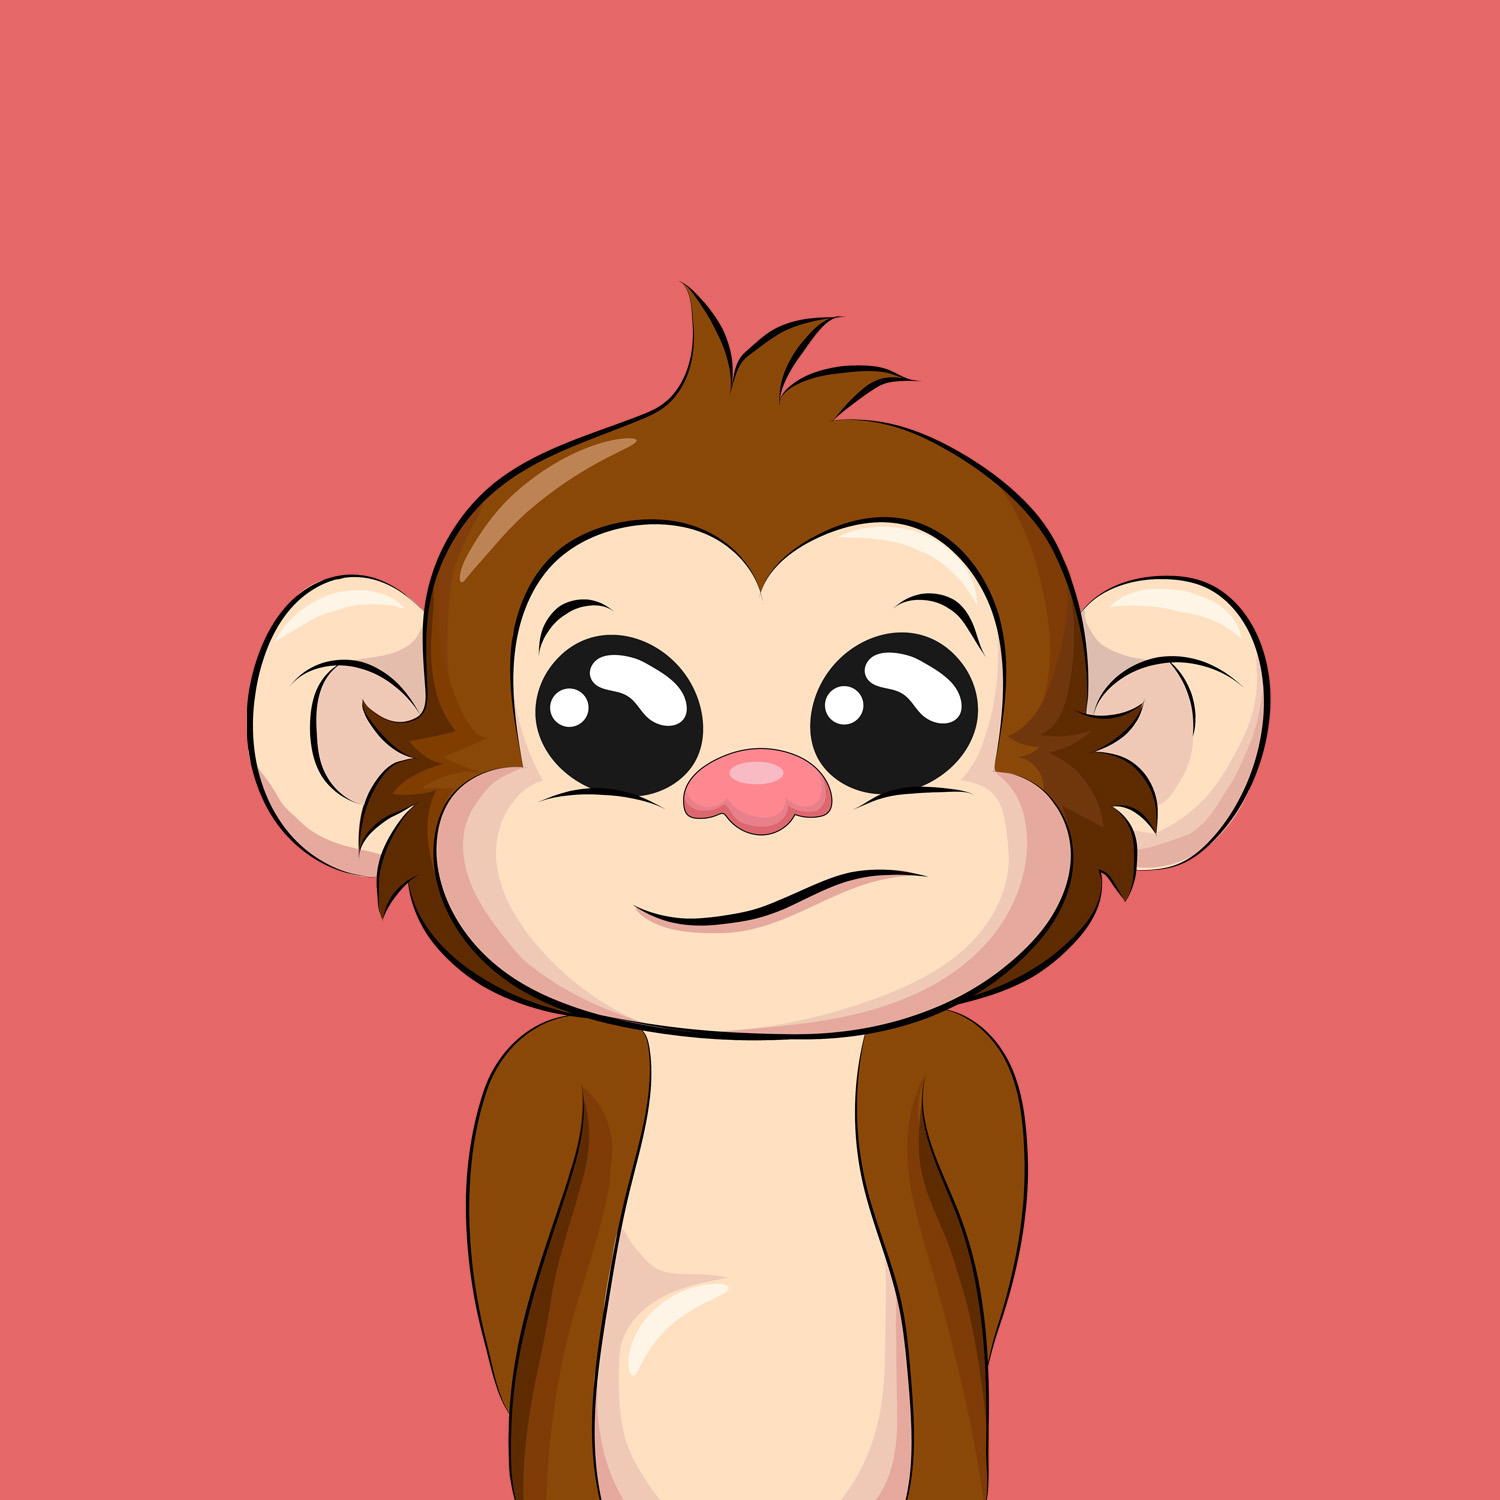 Nft Cute ape #8